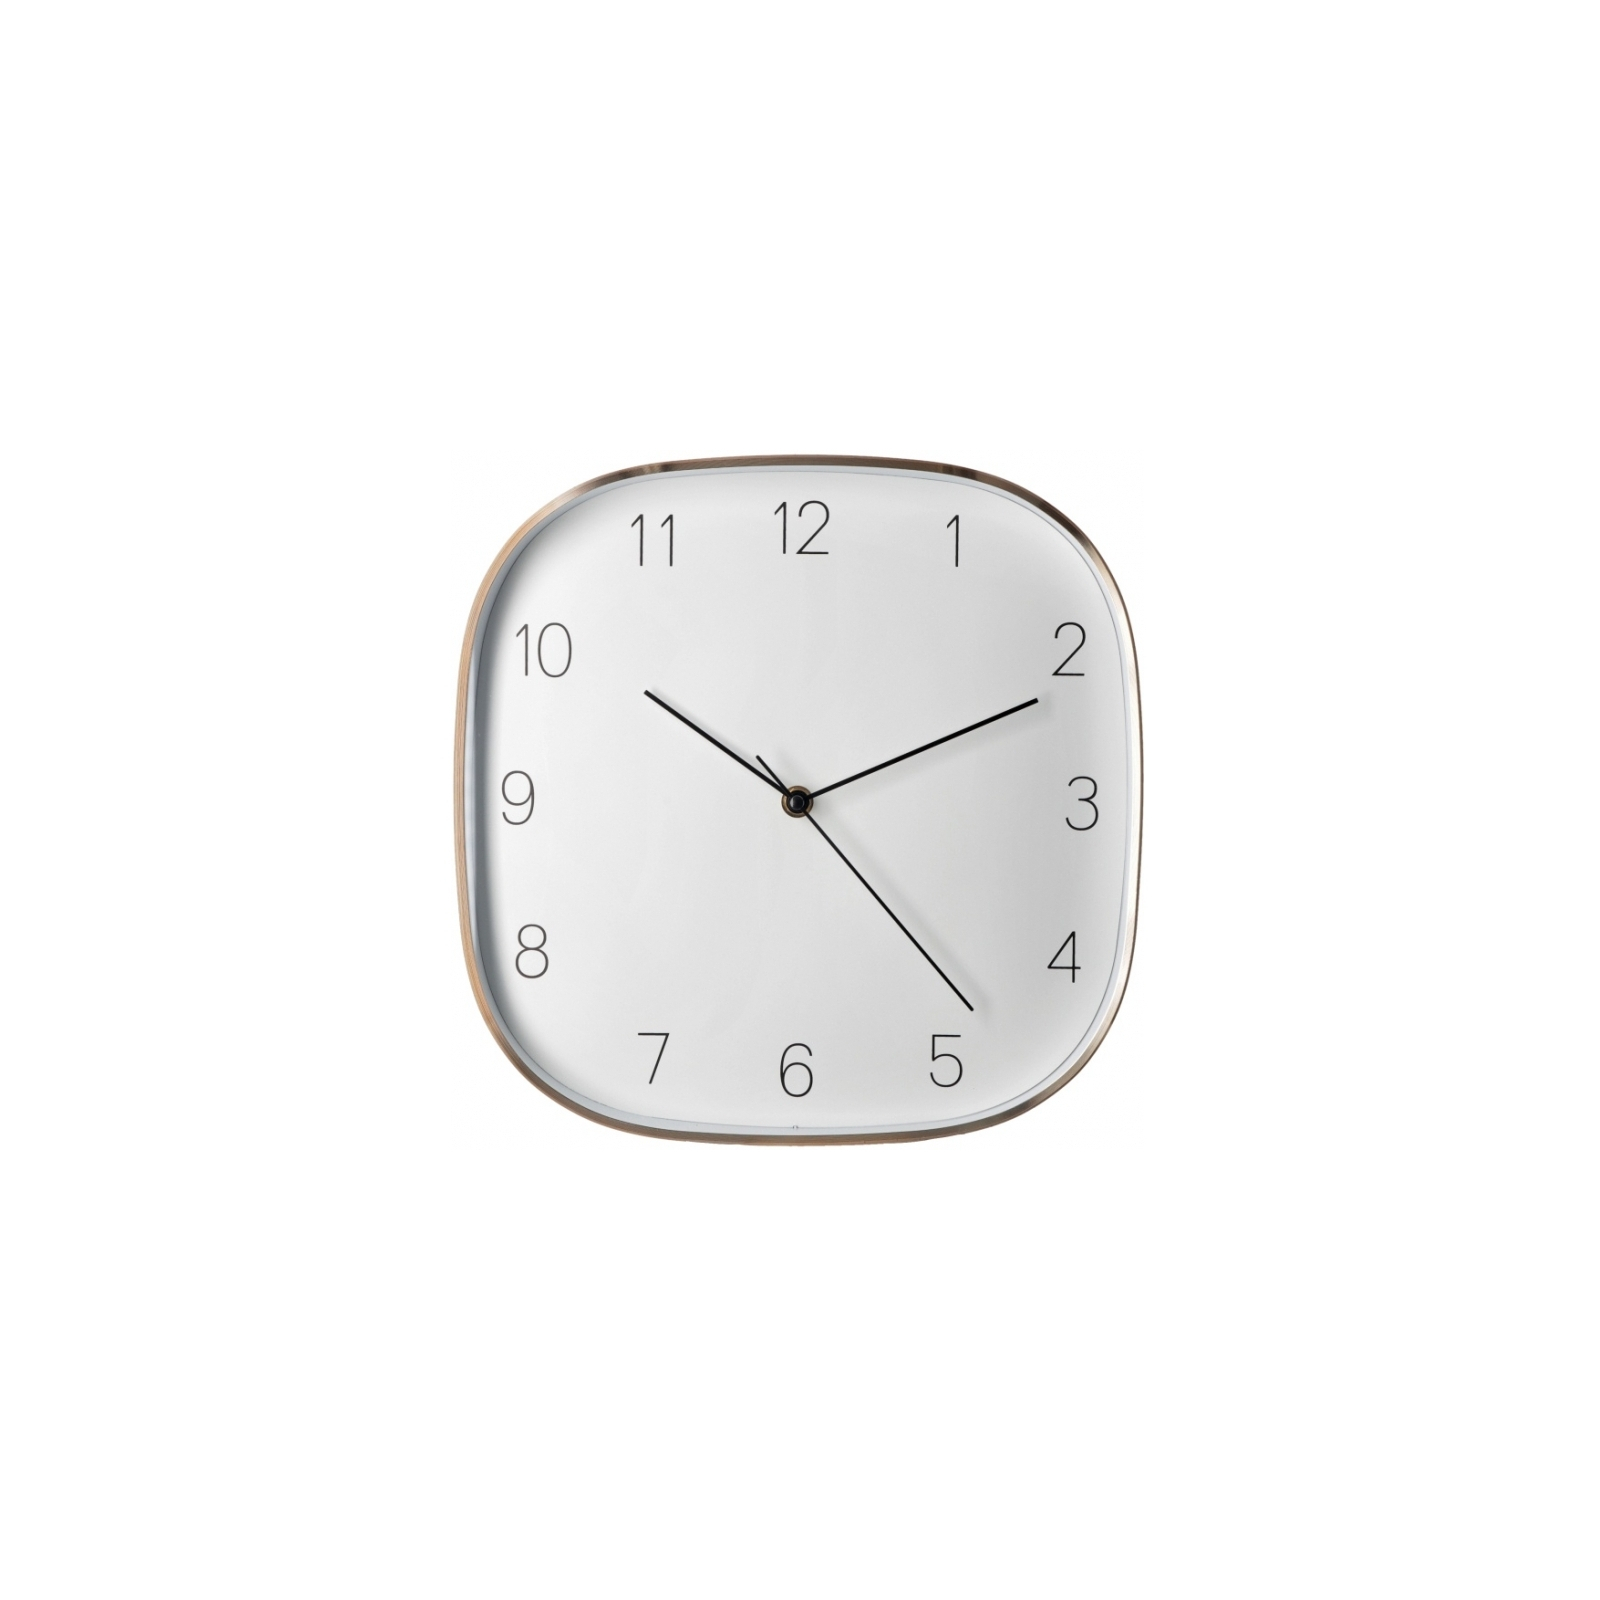 Настенные часы Optima Promo Promo Jewel, металлический, золотой (O52080-15)